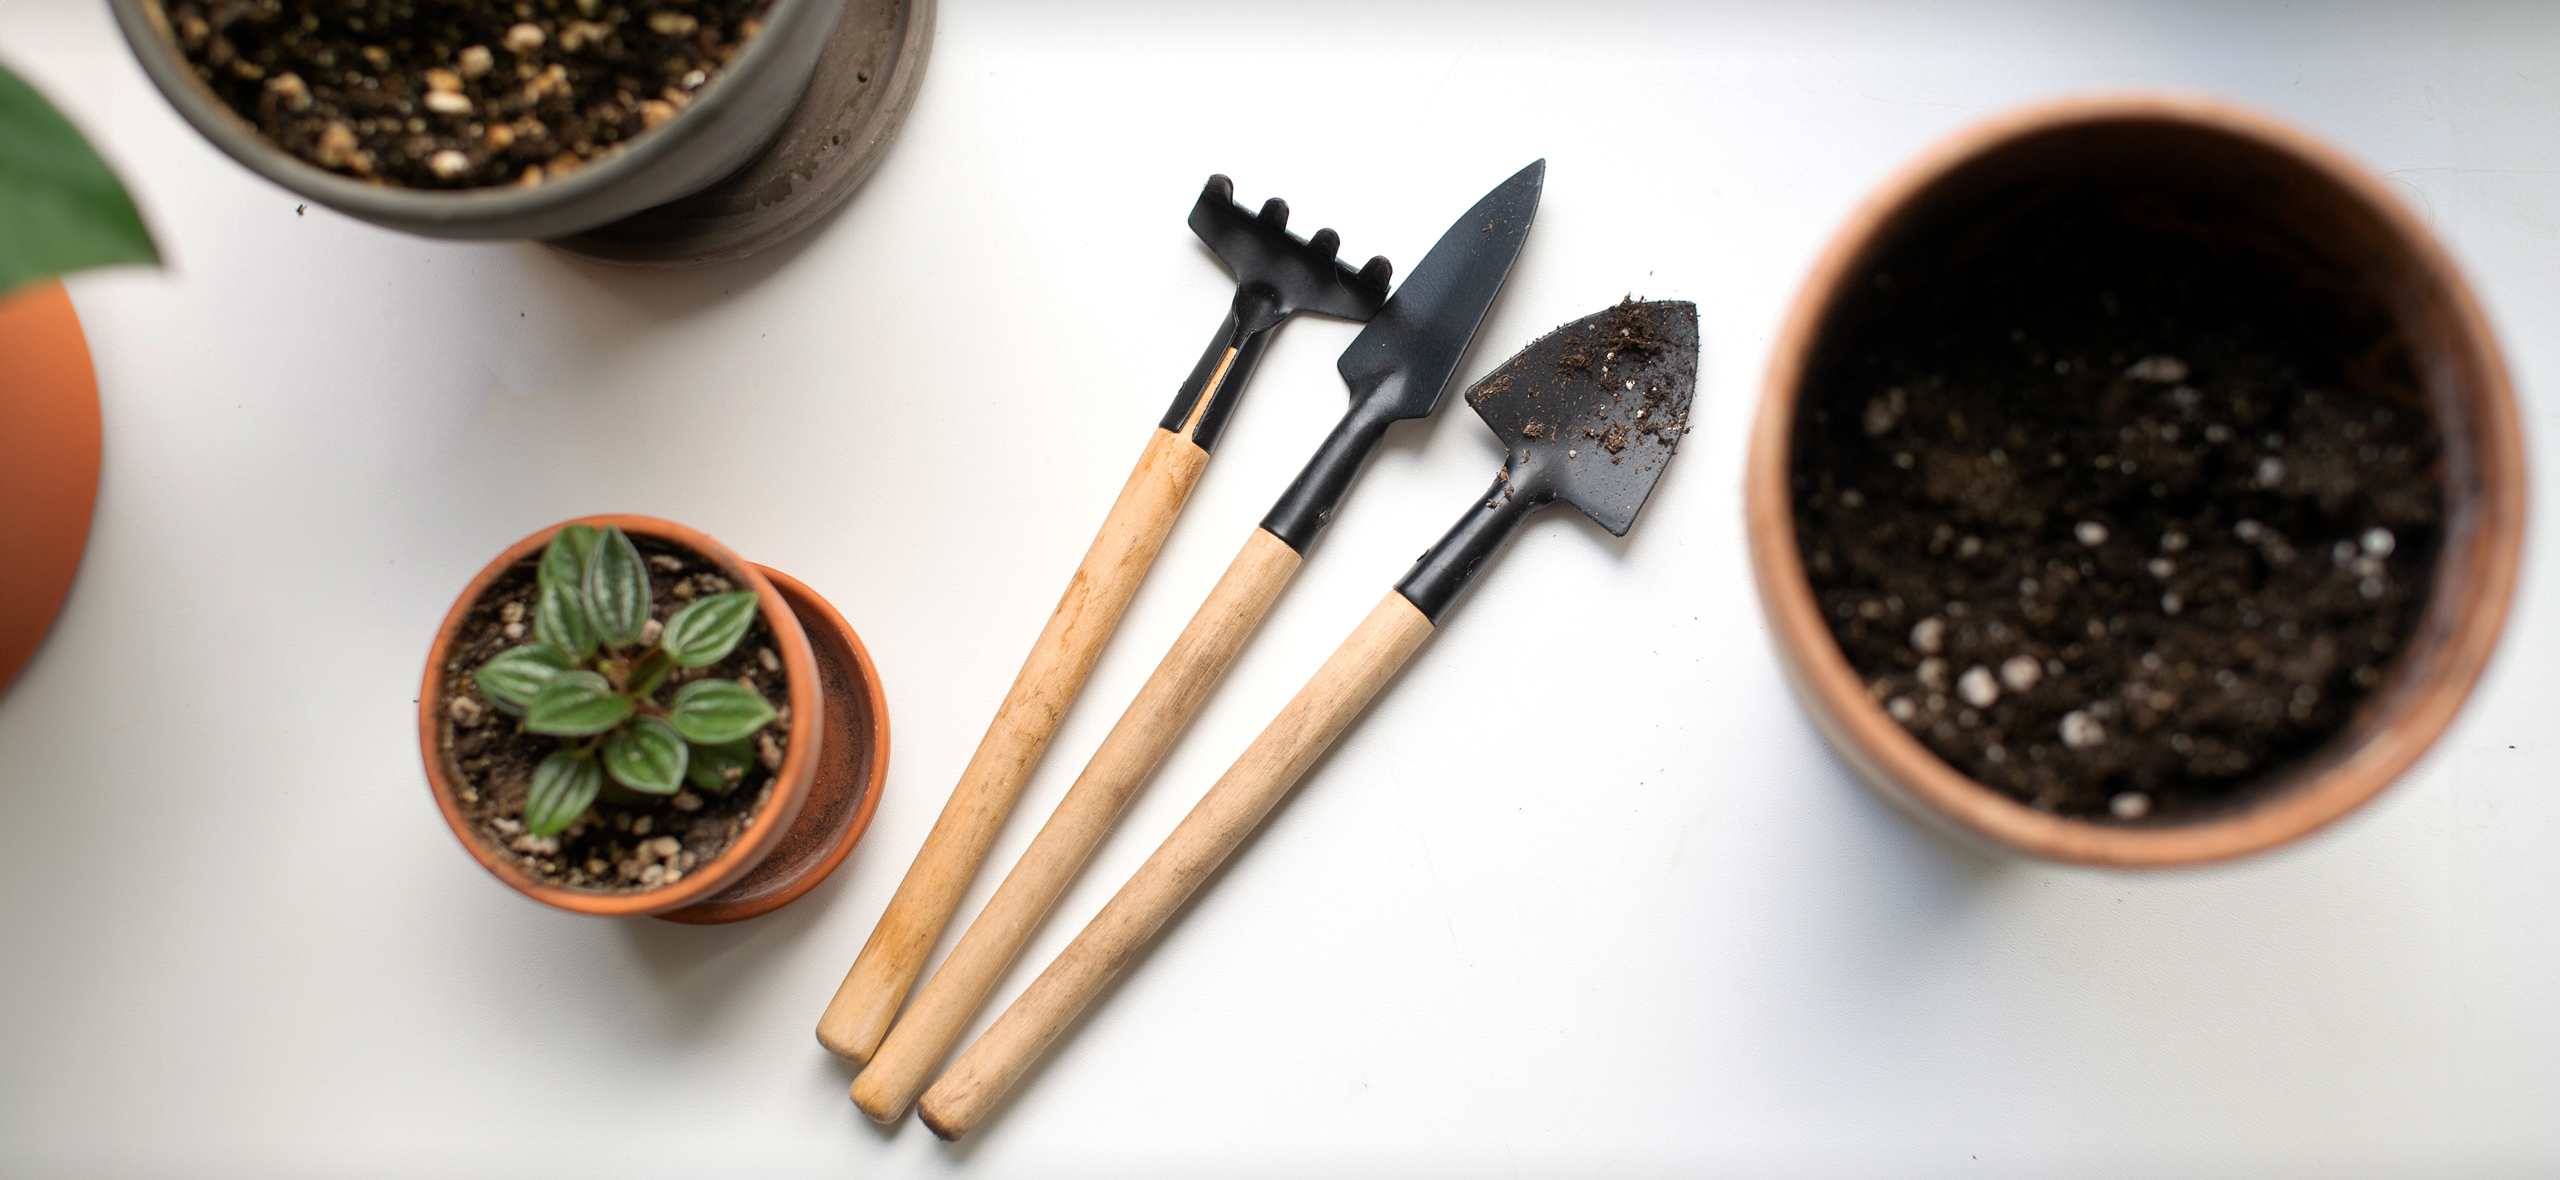 Рекомендую: набор мини-садовых инстру­ментов для ком­натных растений